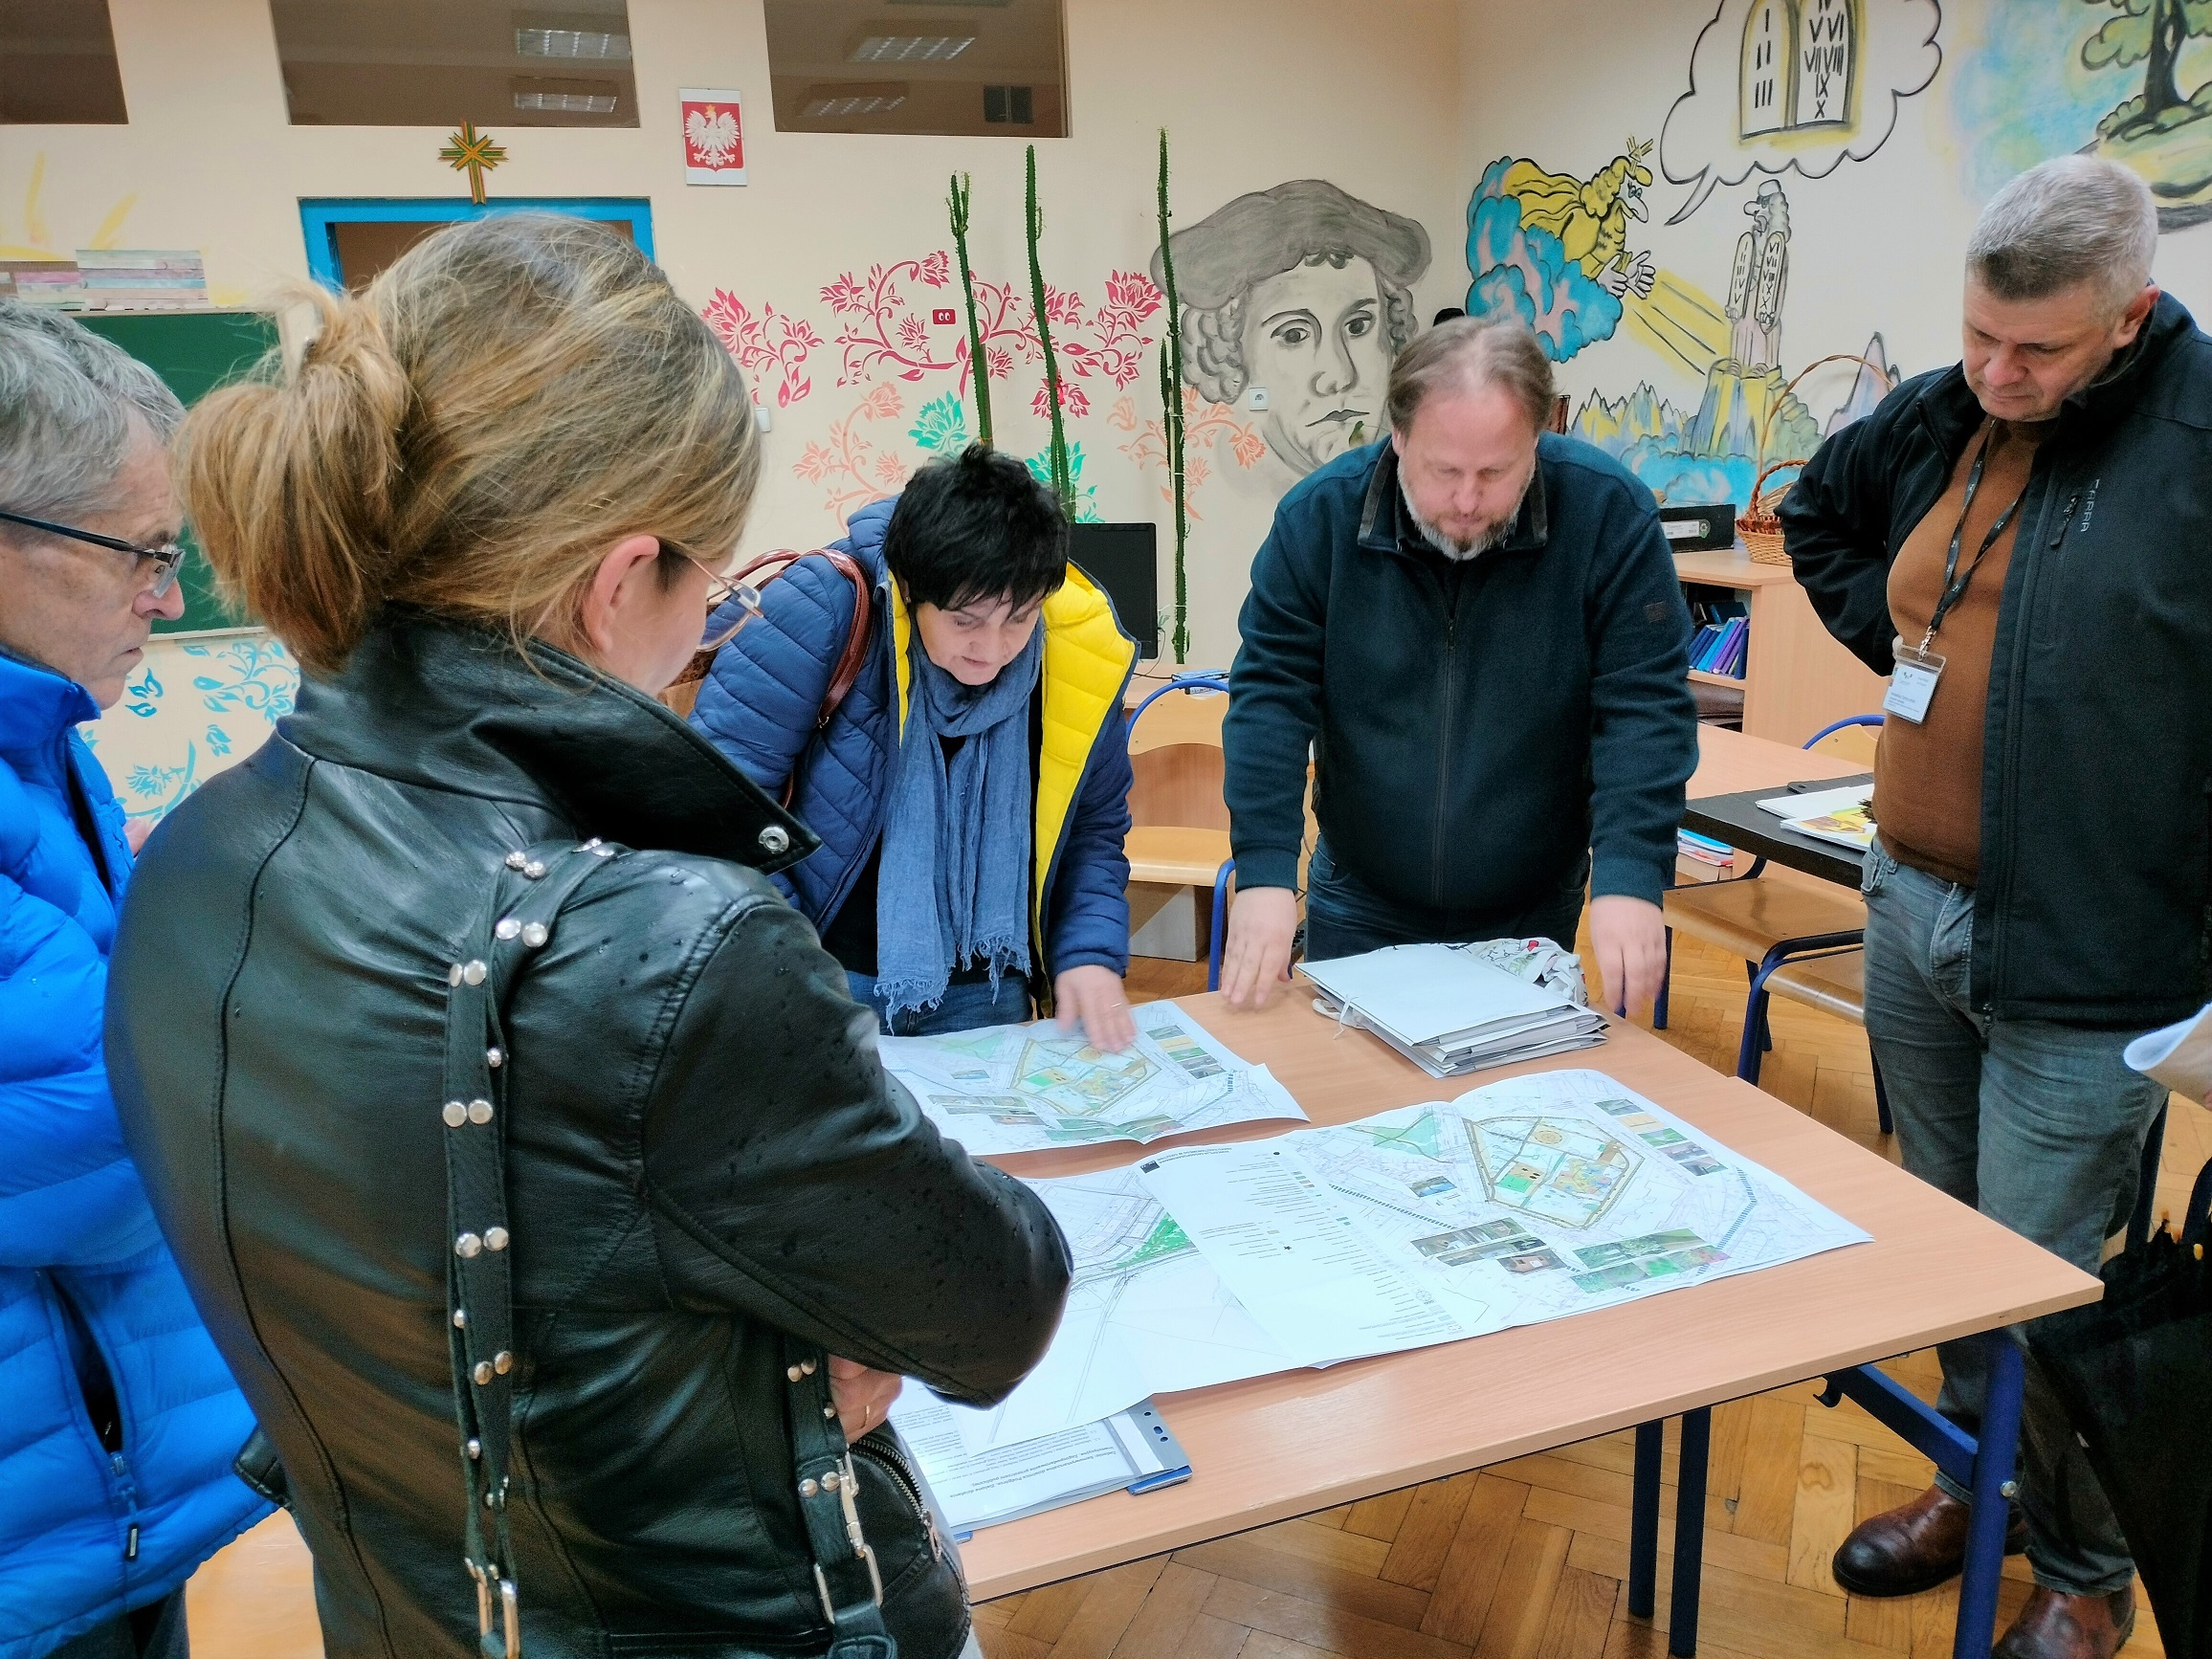 Konsultacje społeczne dotyczące terenów zielonych na obszarze ul. Błogocka-Mickiewicza-Hallera